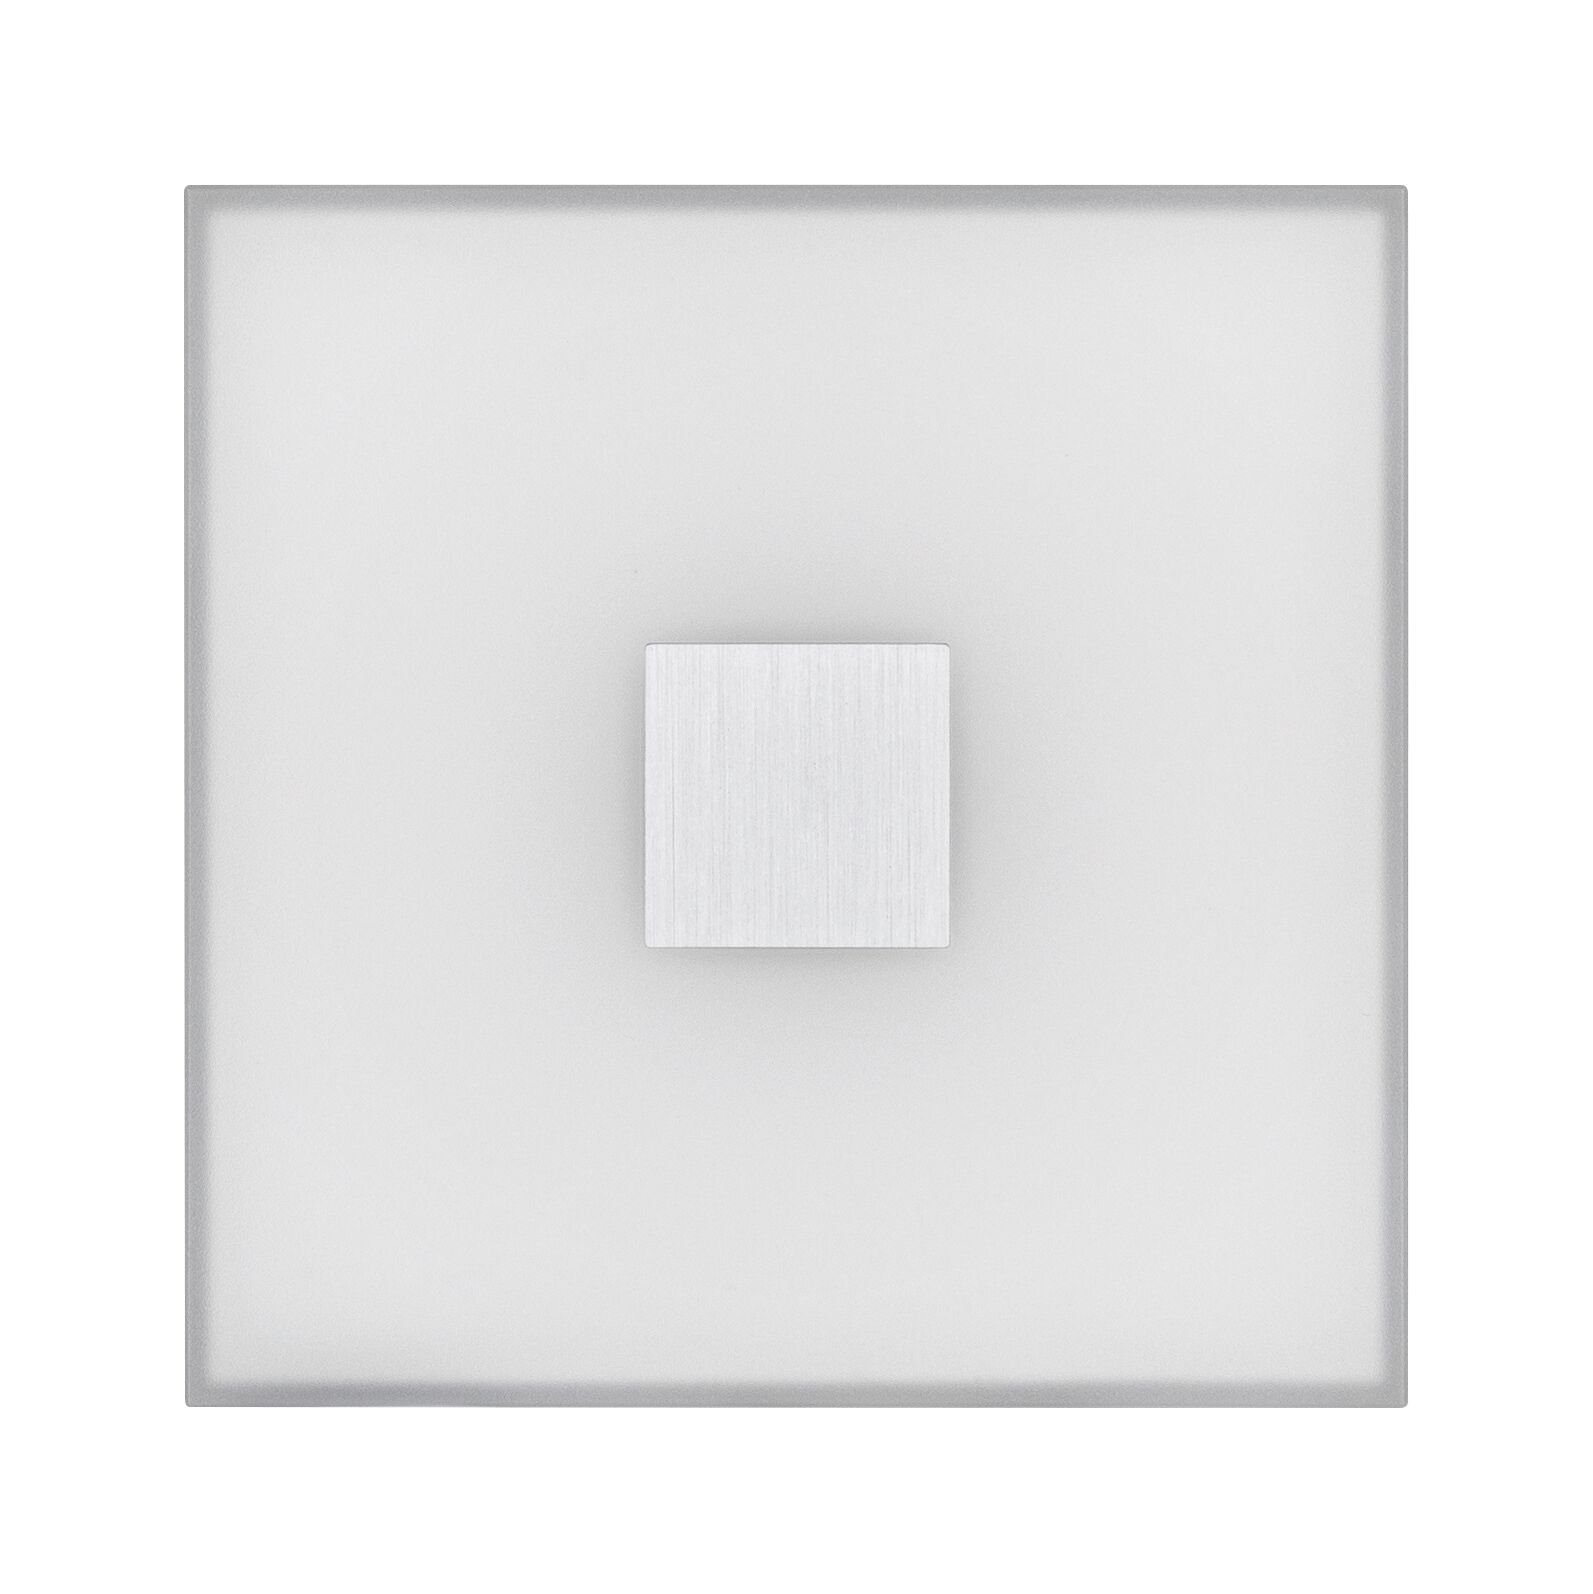 LumiTiles LED Fliesen Smart Home Zigbee Square 2er-Set IP44 100x10mm 2x12lm 230/12V 2x0,8W dimmbar RGBW+ Weiß Kunststoff/Aluminium